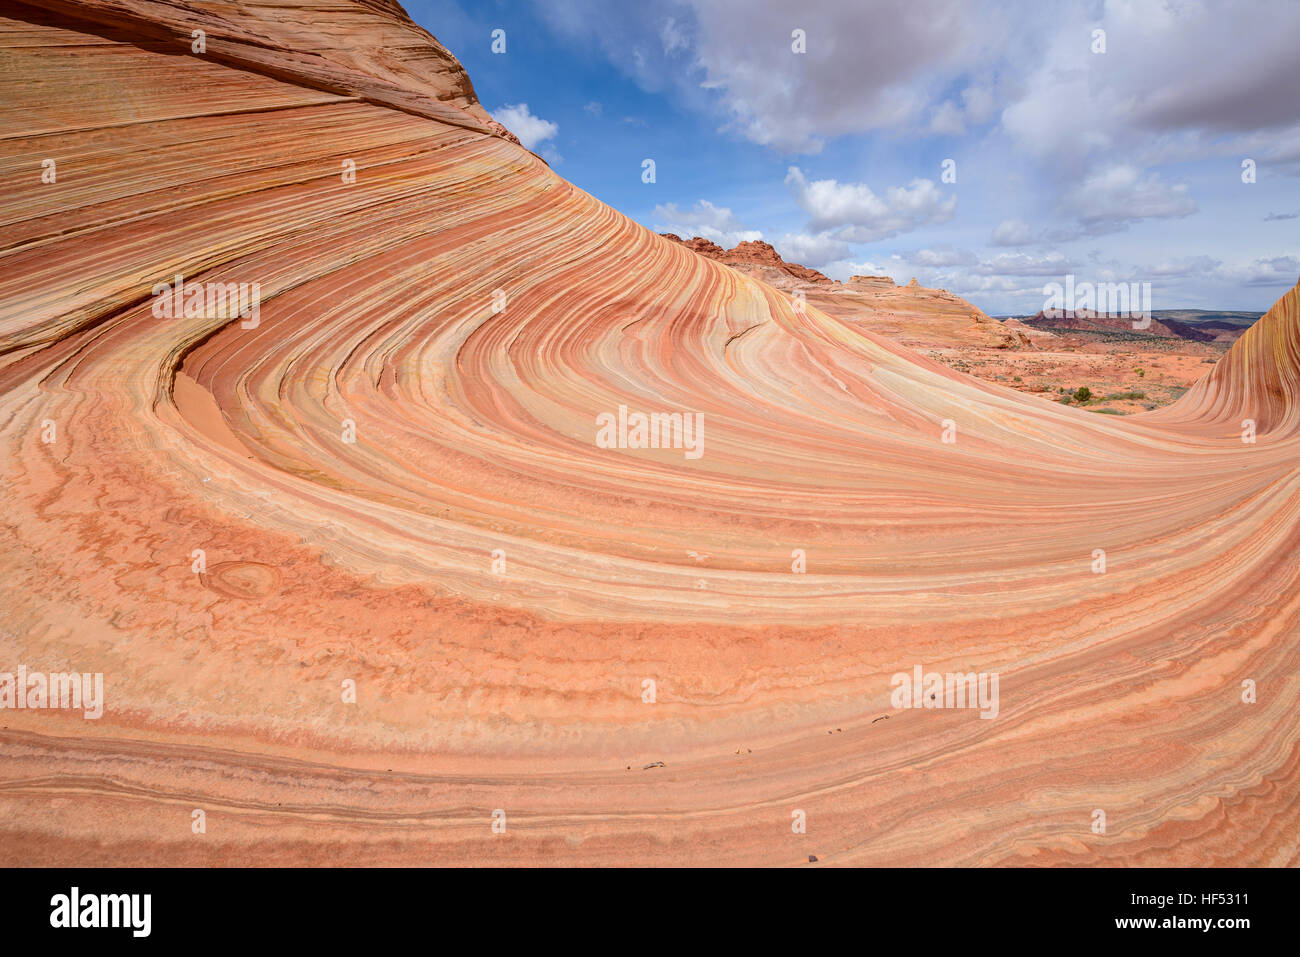 Tourbillons de grès - couches de grès colorés à la vague, une érosion spectaculaire formation rocheuse de grès, Arizona-Utah frontière. Banque D'Images